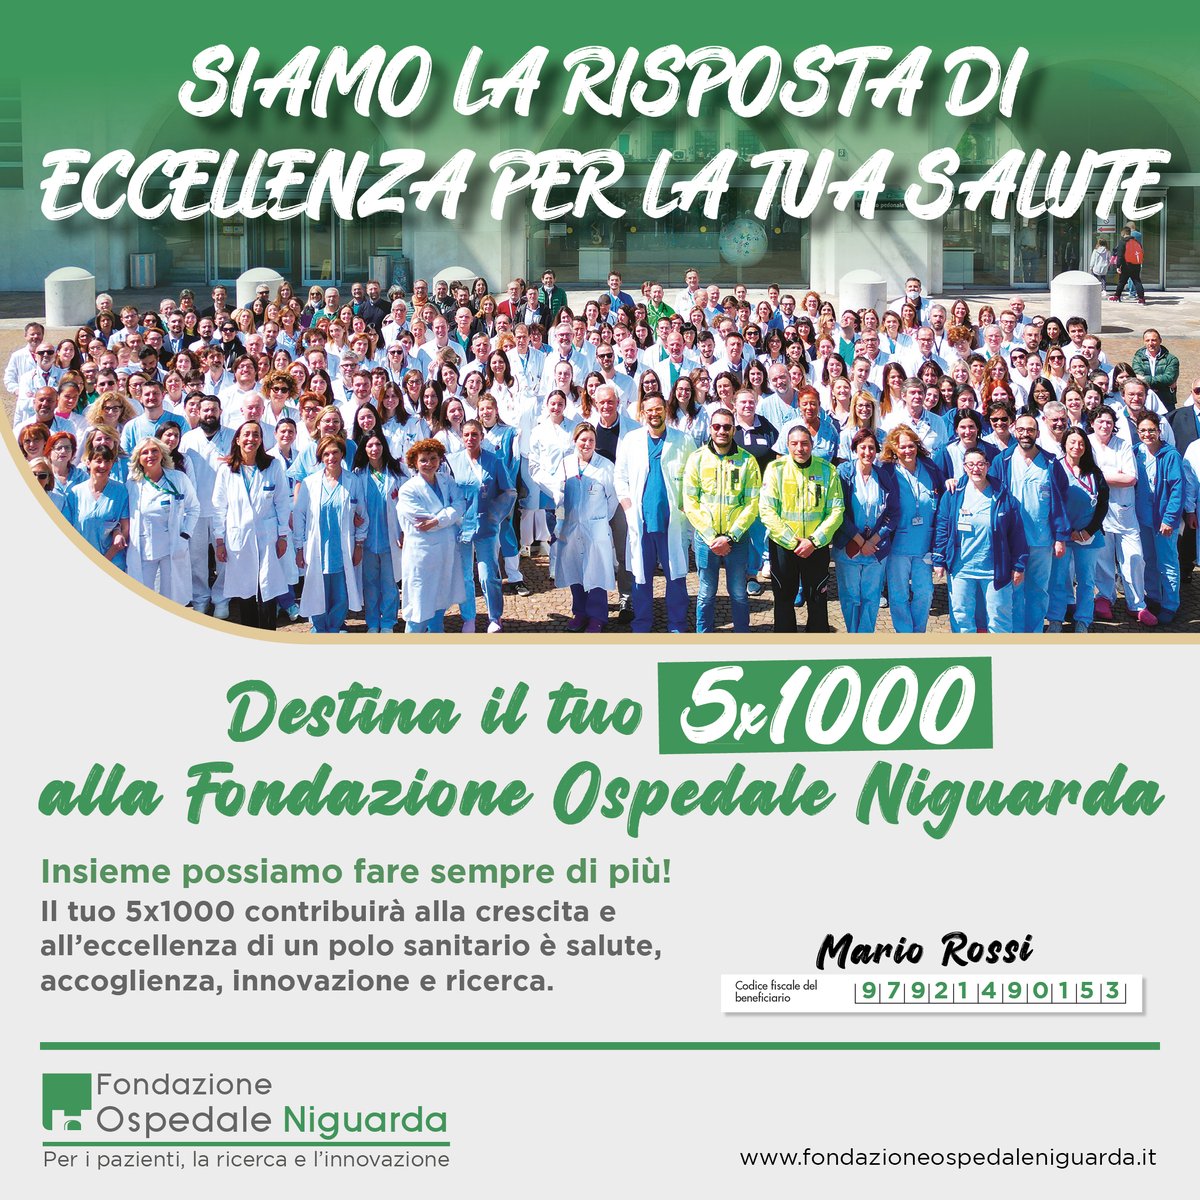 Dona il tuo 5 x 1000 alla Fondazione Ospedale Niguarda Nello spazio del 5x1000 della tua dichiarazione dei redditi inserisci il codice fiscale 97921490153. Contribuirai a sostenere l’Ospedale Niguarda di Milano. Insieme possiamo fare sempre di più! #ospedaleniguarda